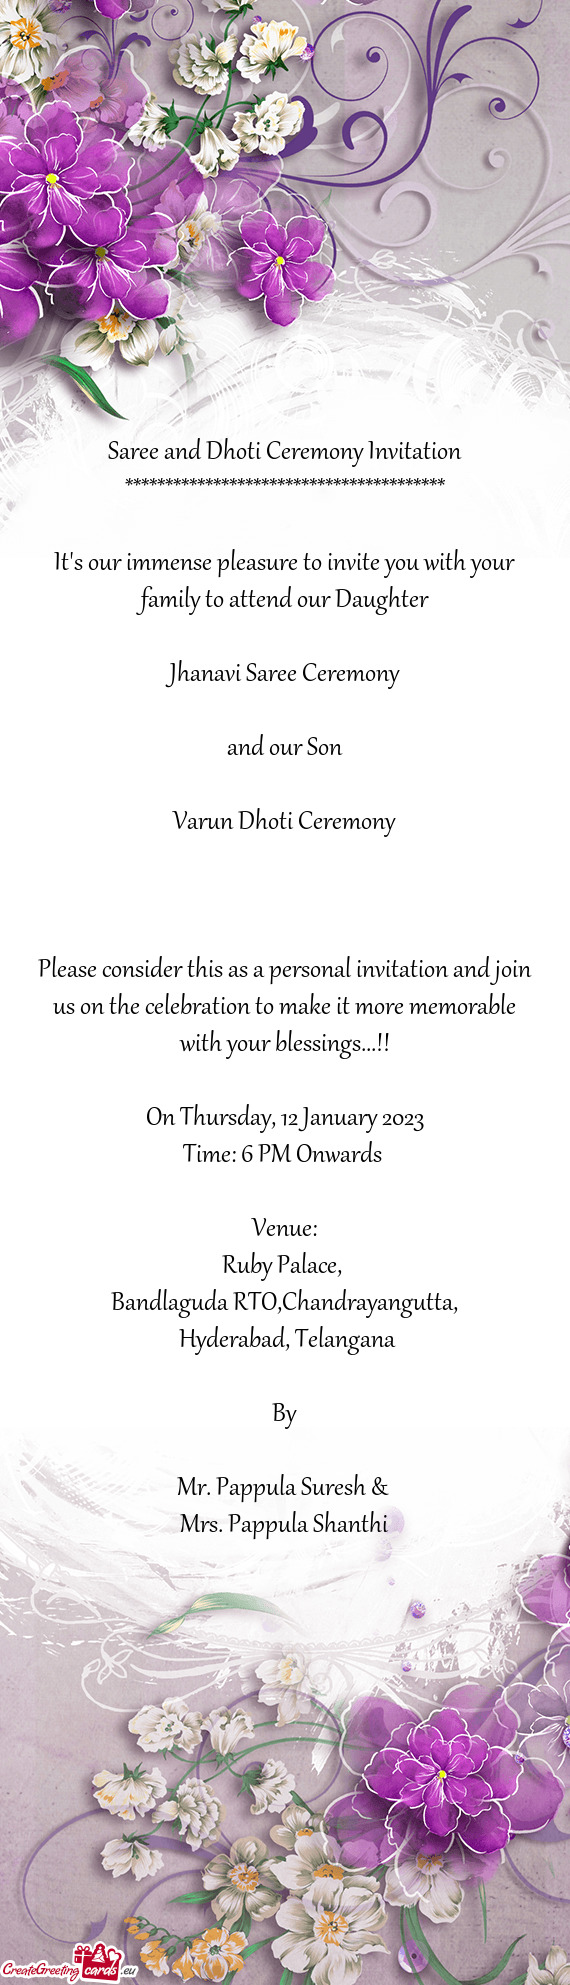 Jhanavi Saree Ceremony